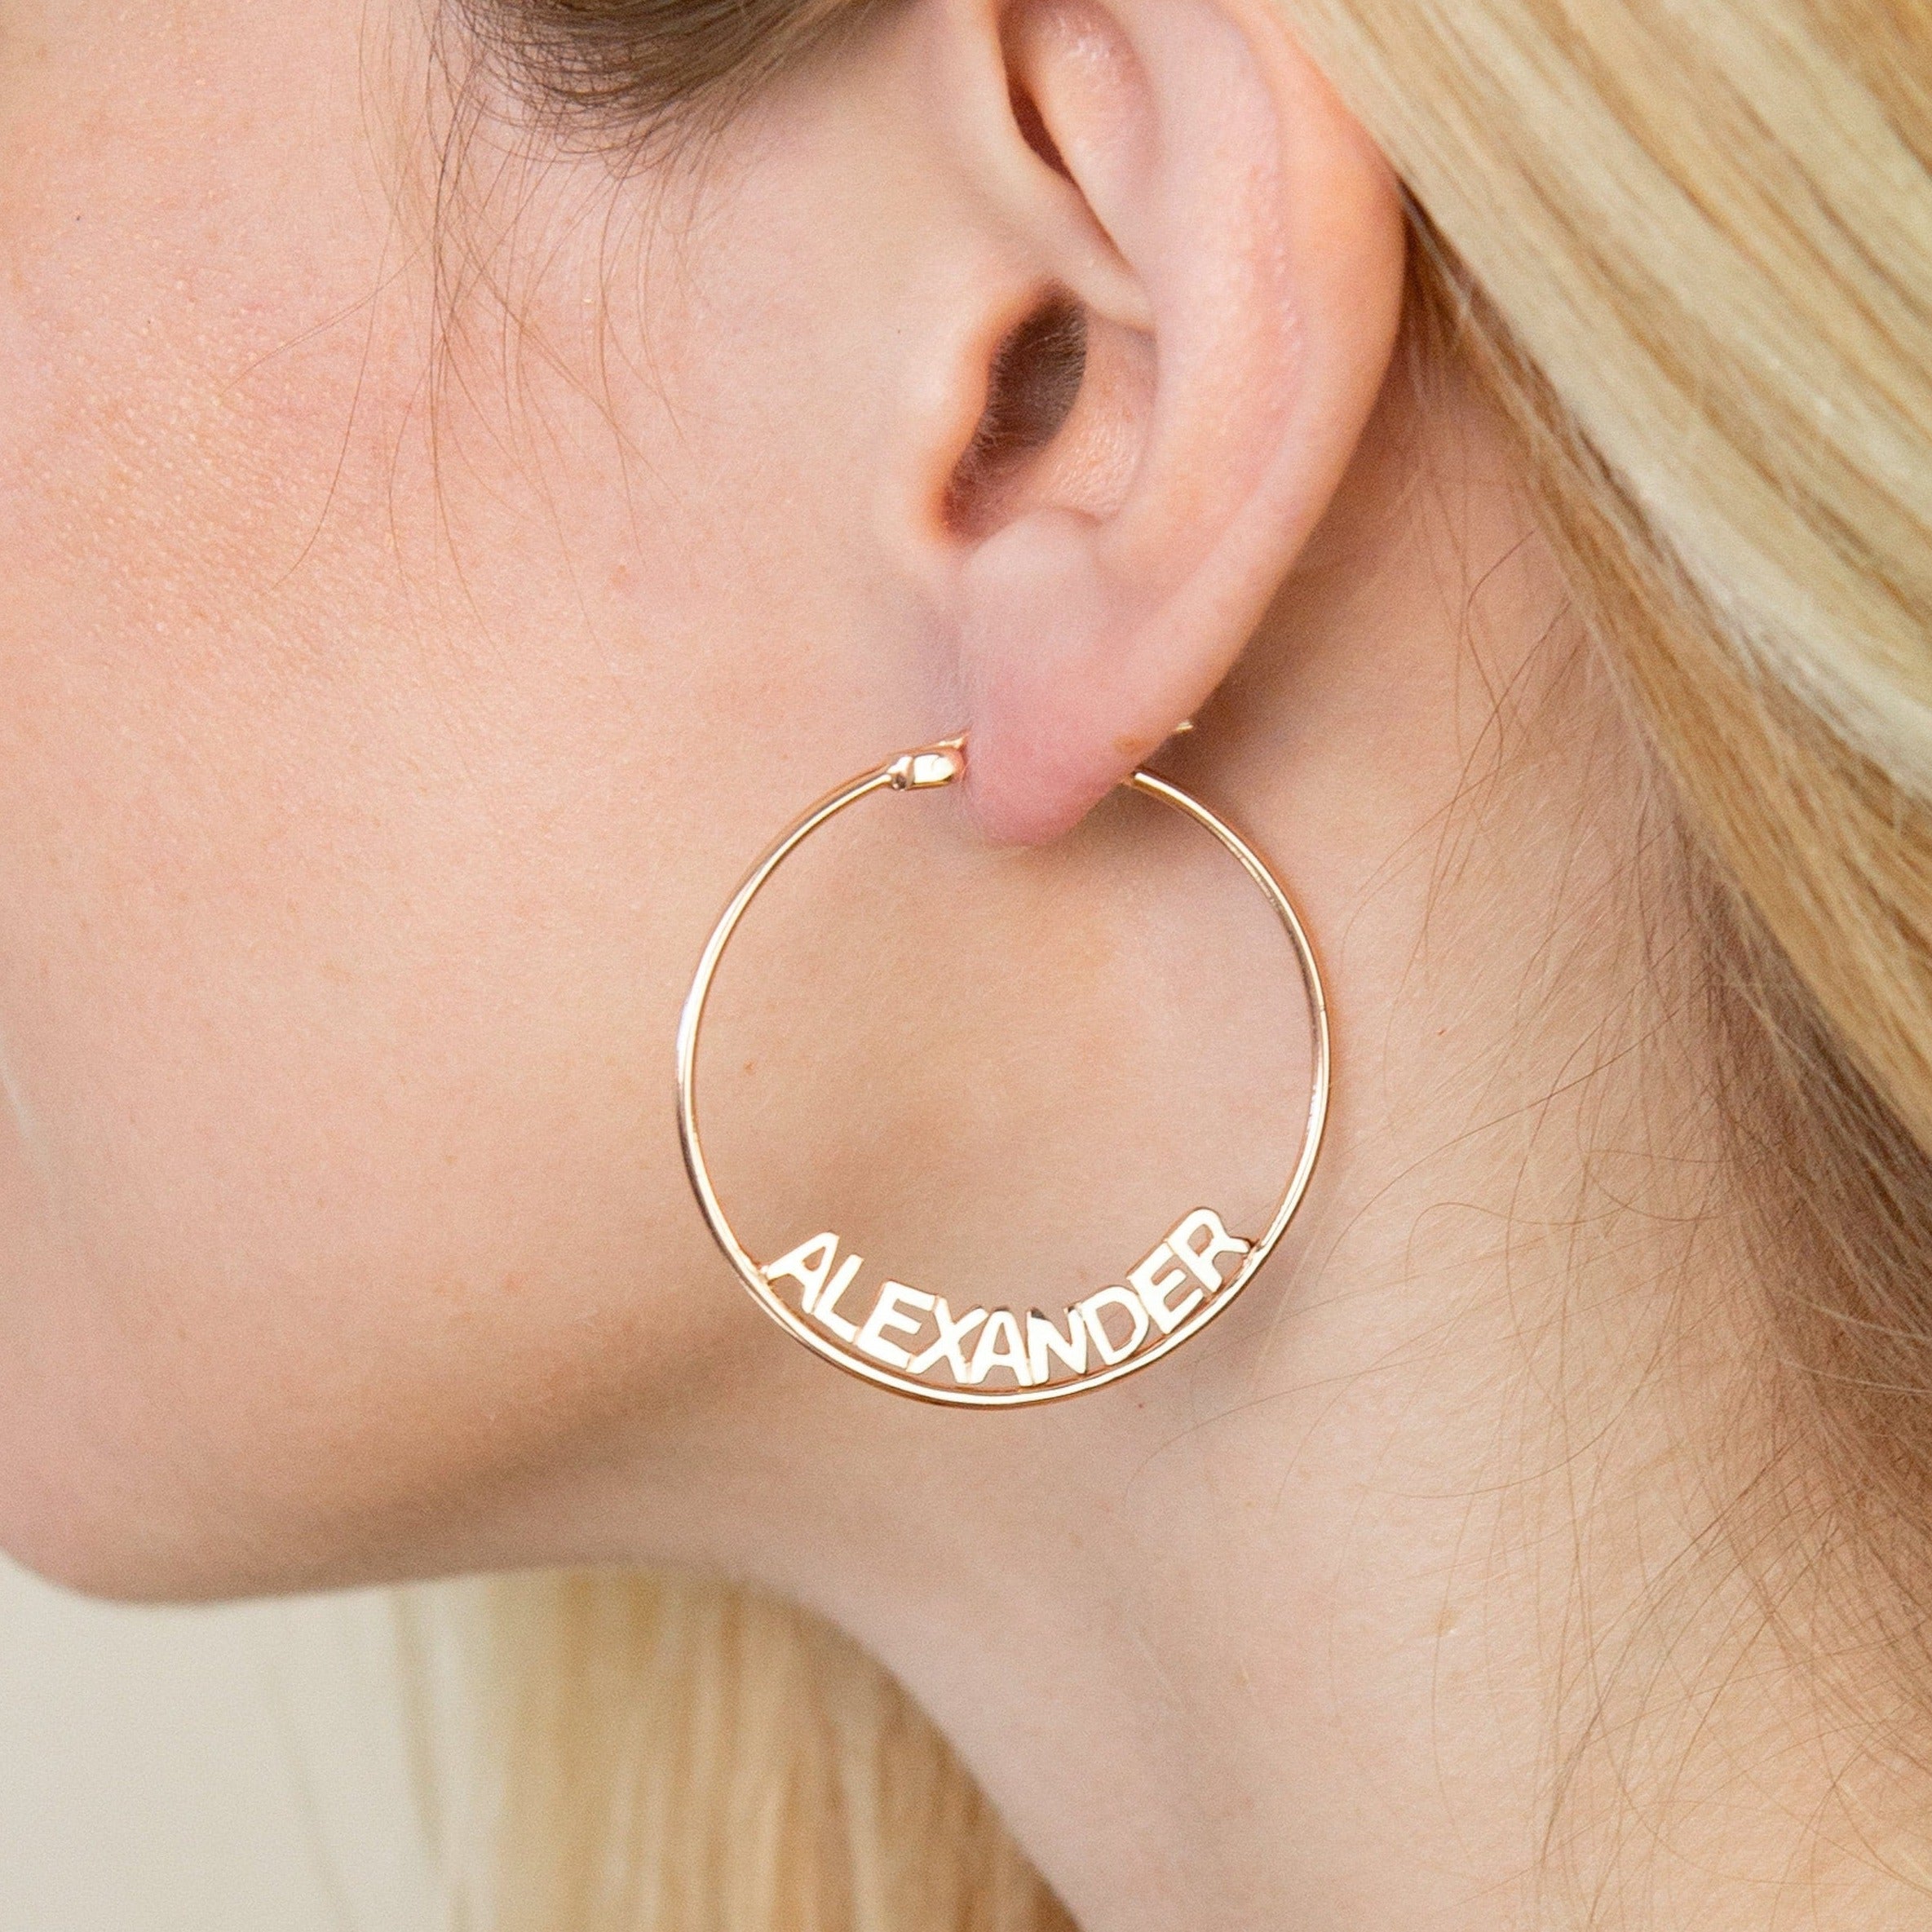 Custom Name Hoops • Large Hoop Earrings Name Earrings • Personalized Gift for Her